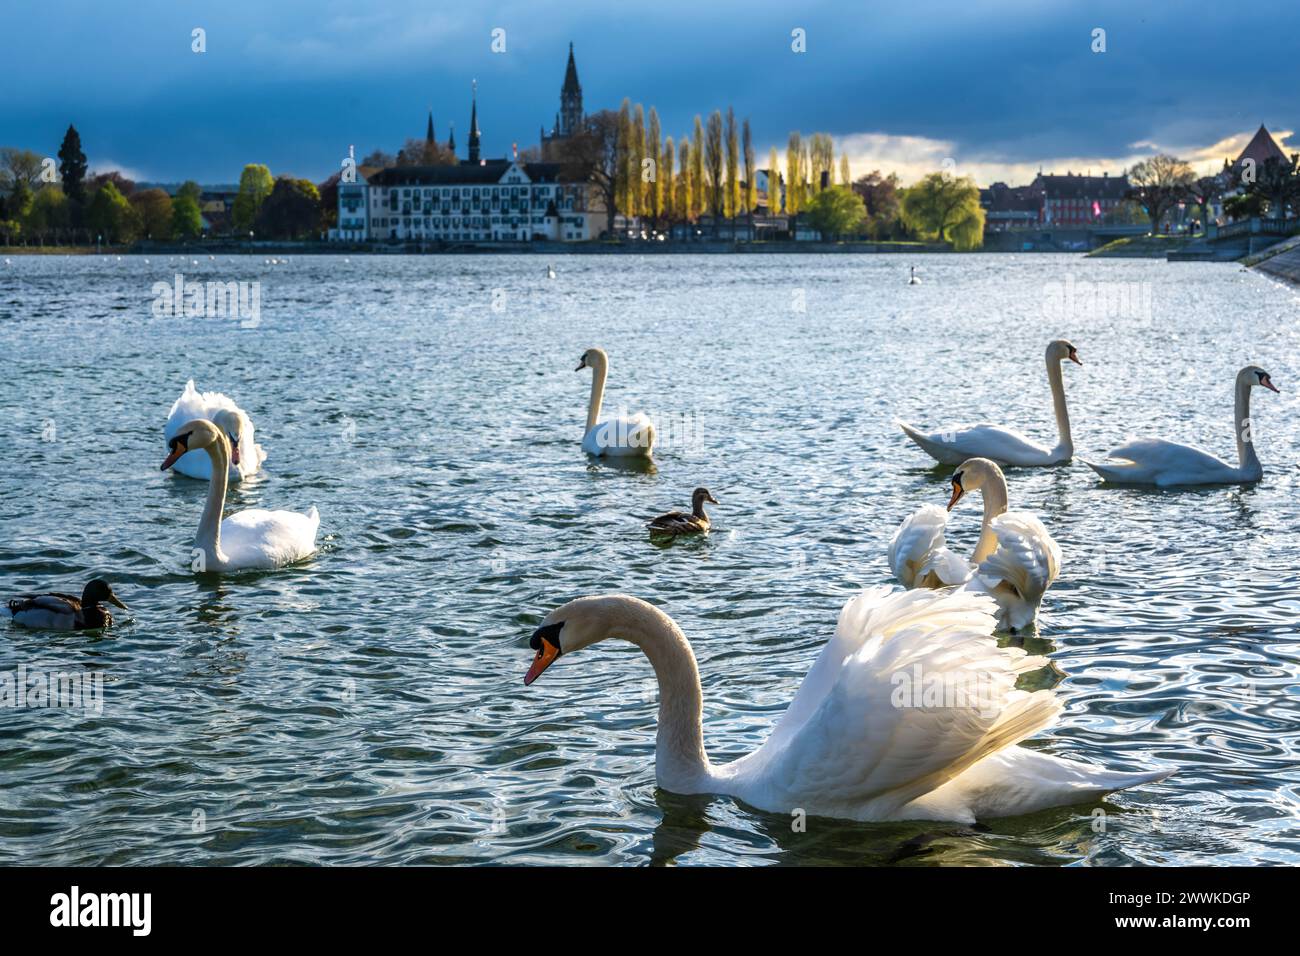 Beschreibung: Schwäne schwimmen an einem sonnigen Frühlingstag entlang der Uferpromenade mit dem Steigenberger Inselhotel, dem Münster und der Rheinbr Stock Photo